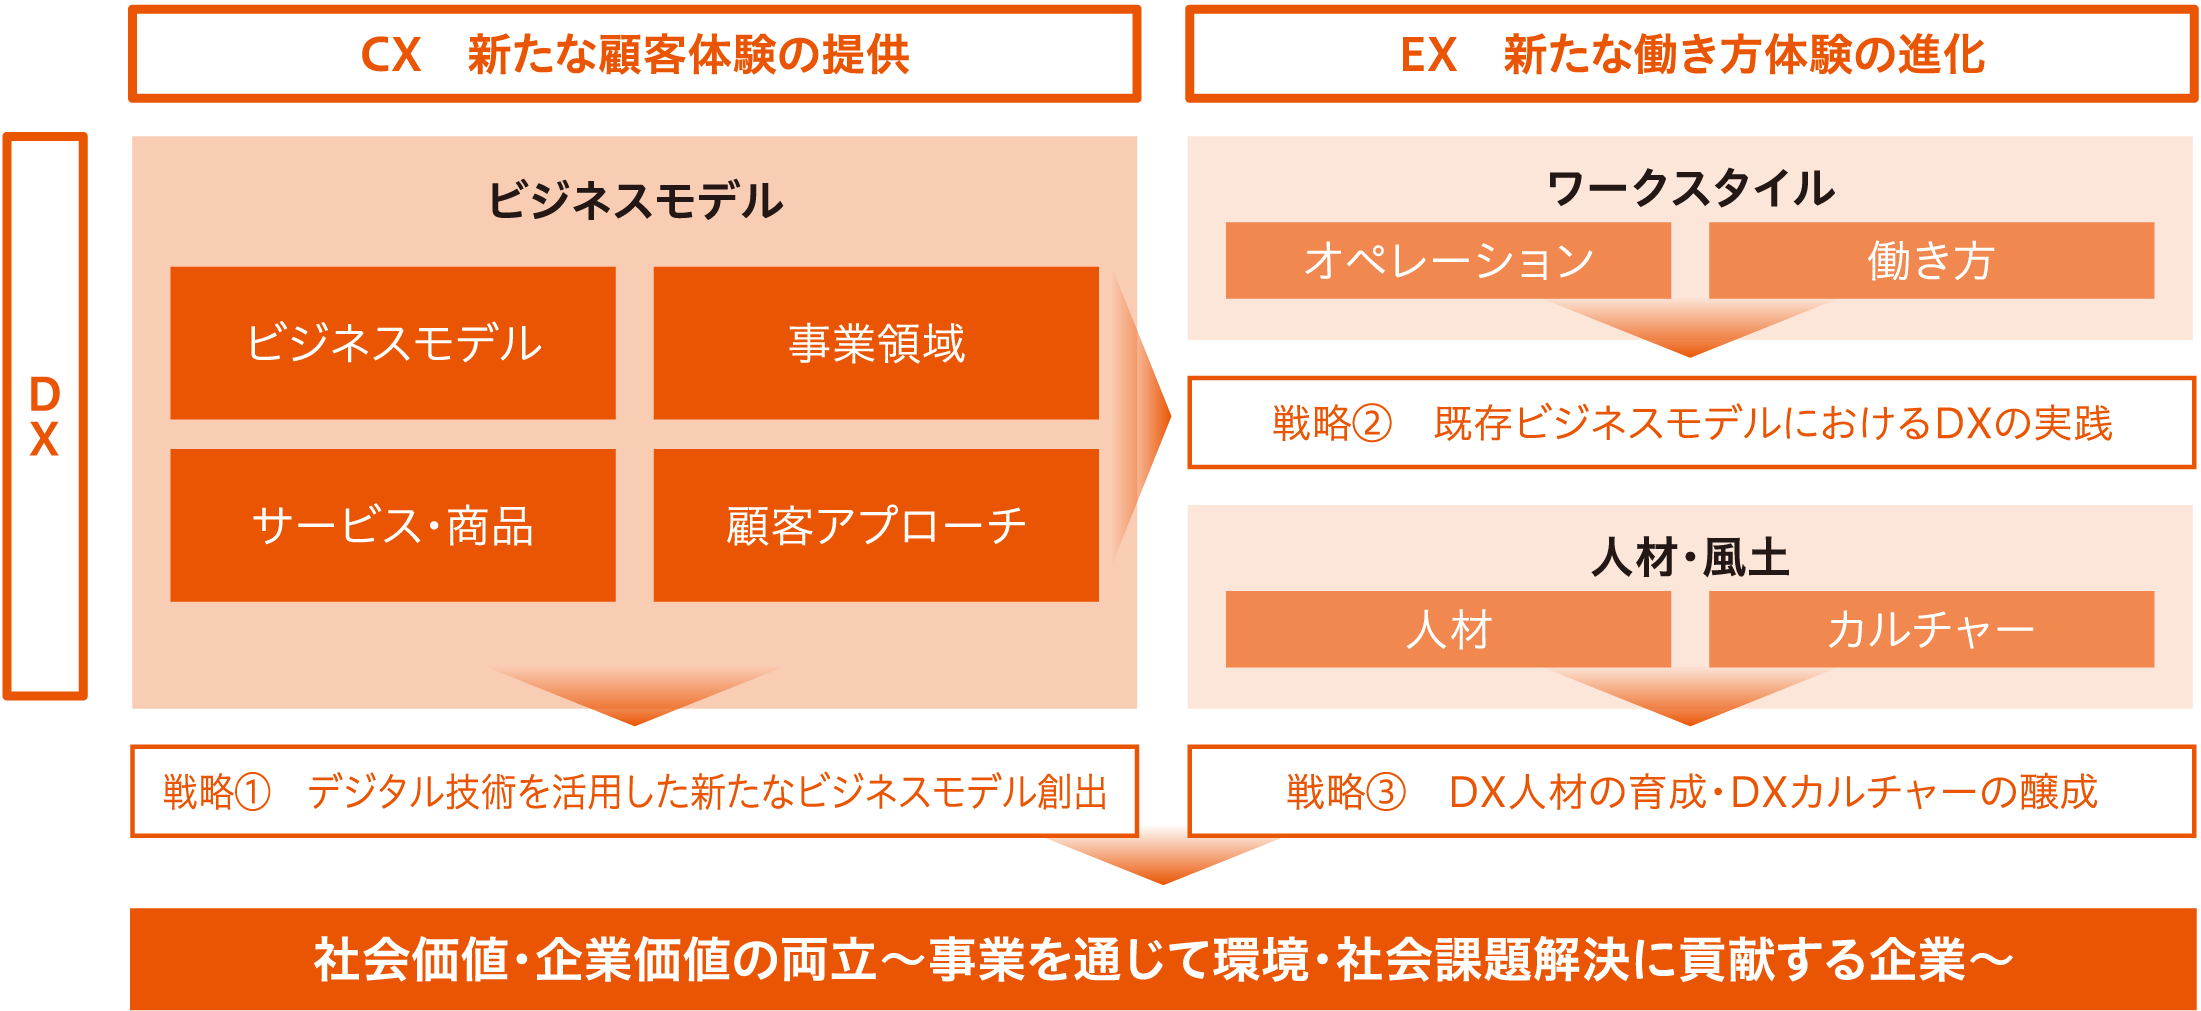 DX戦略の図